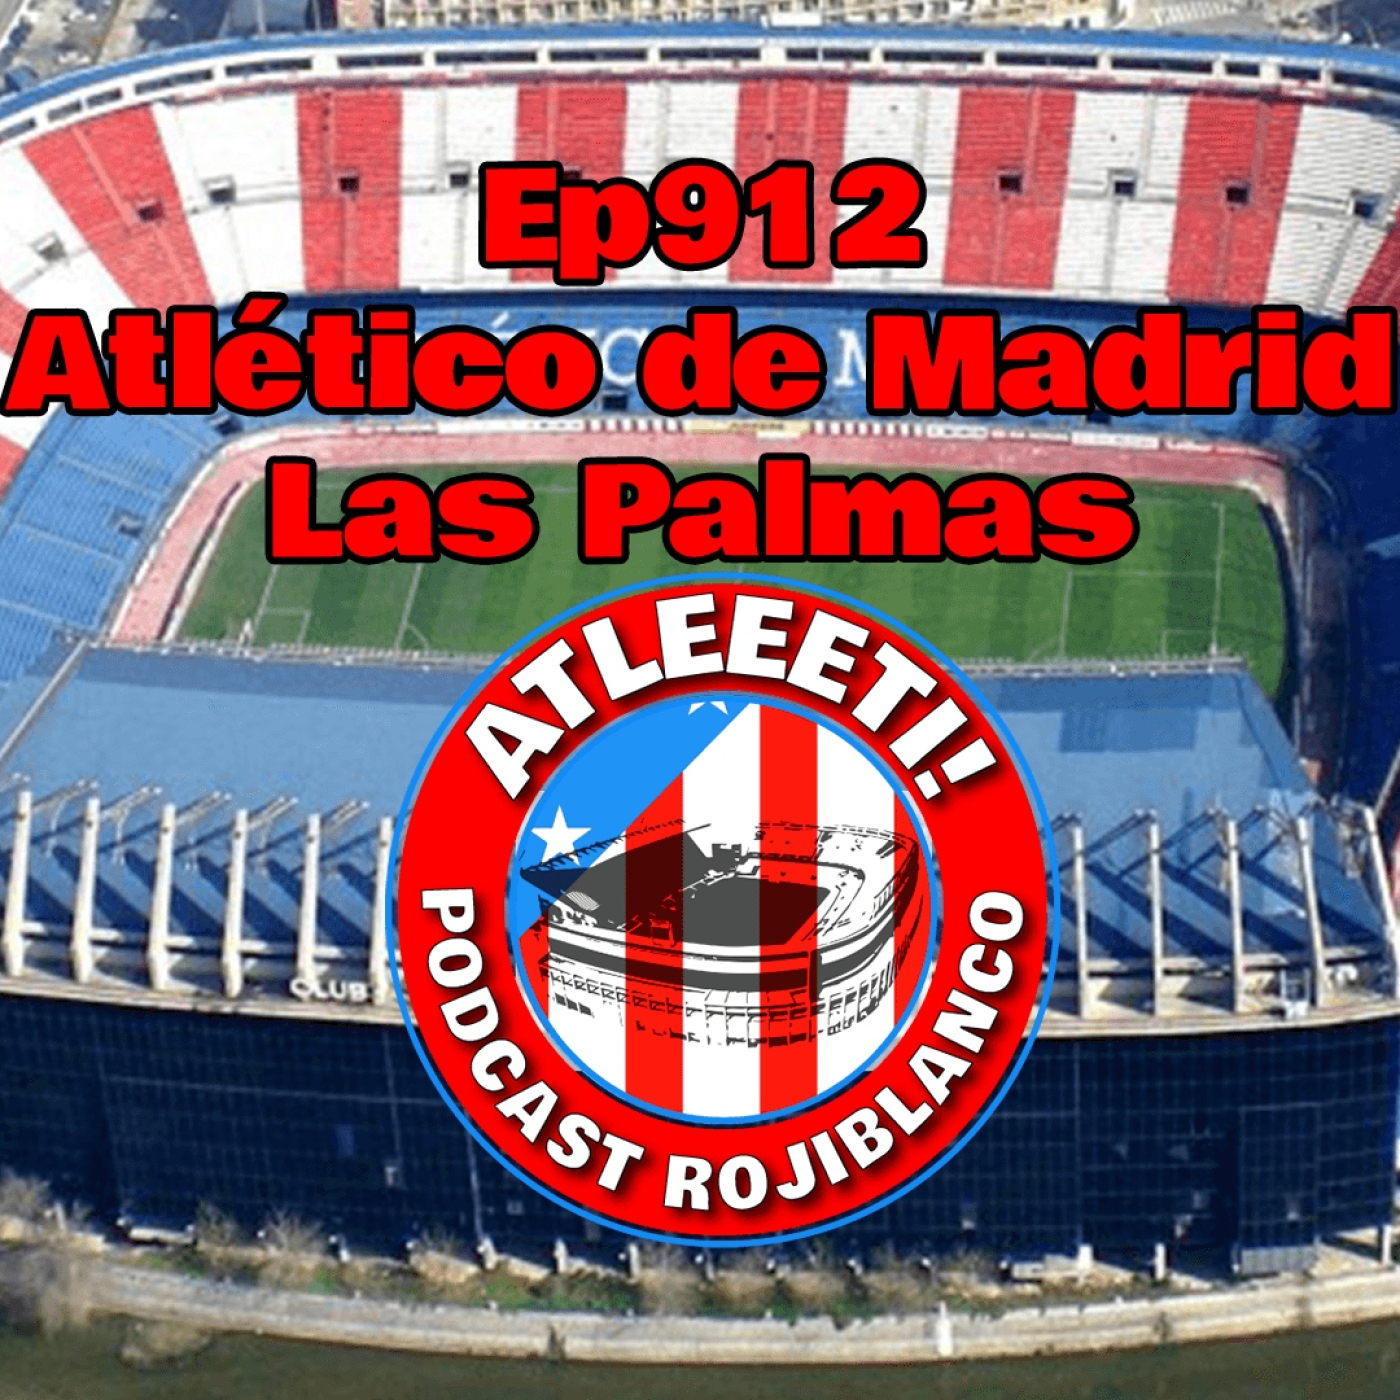 Ep912: Atlético de Madrid 5-0 Las Palmas